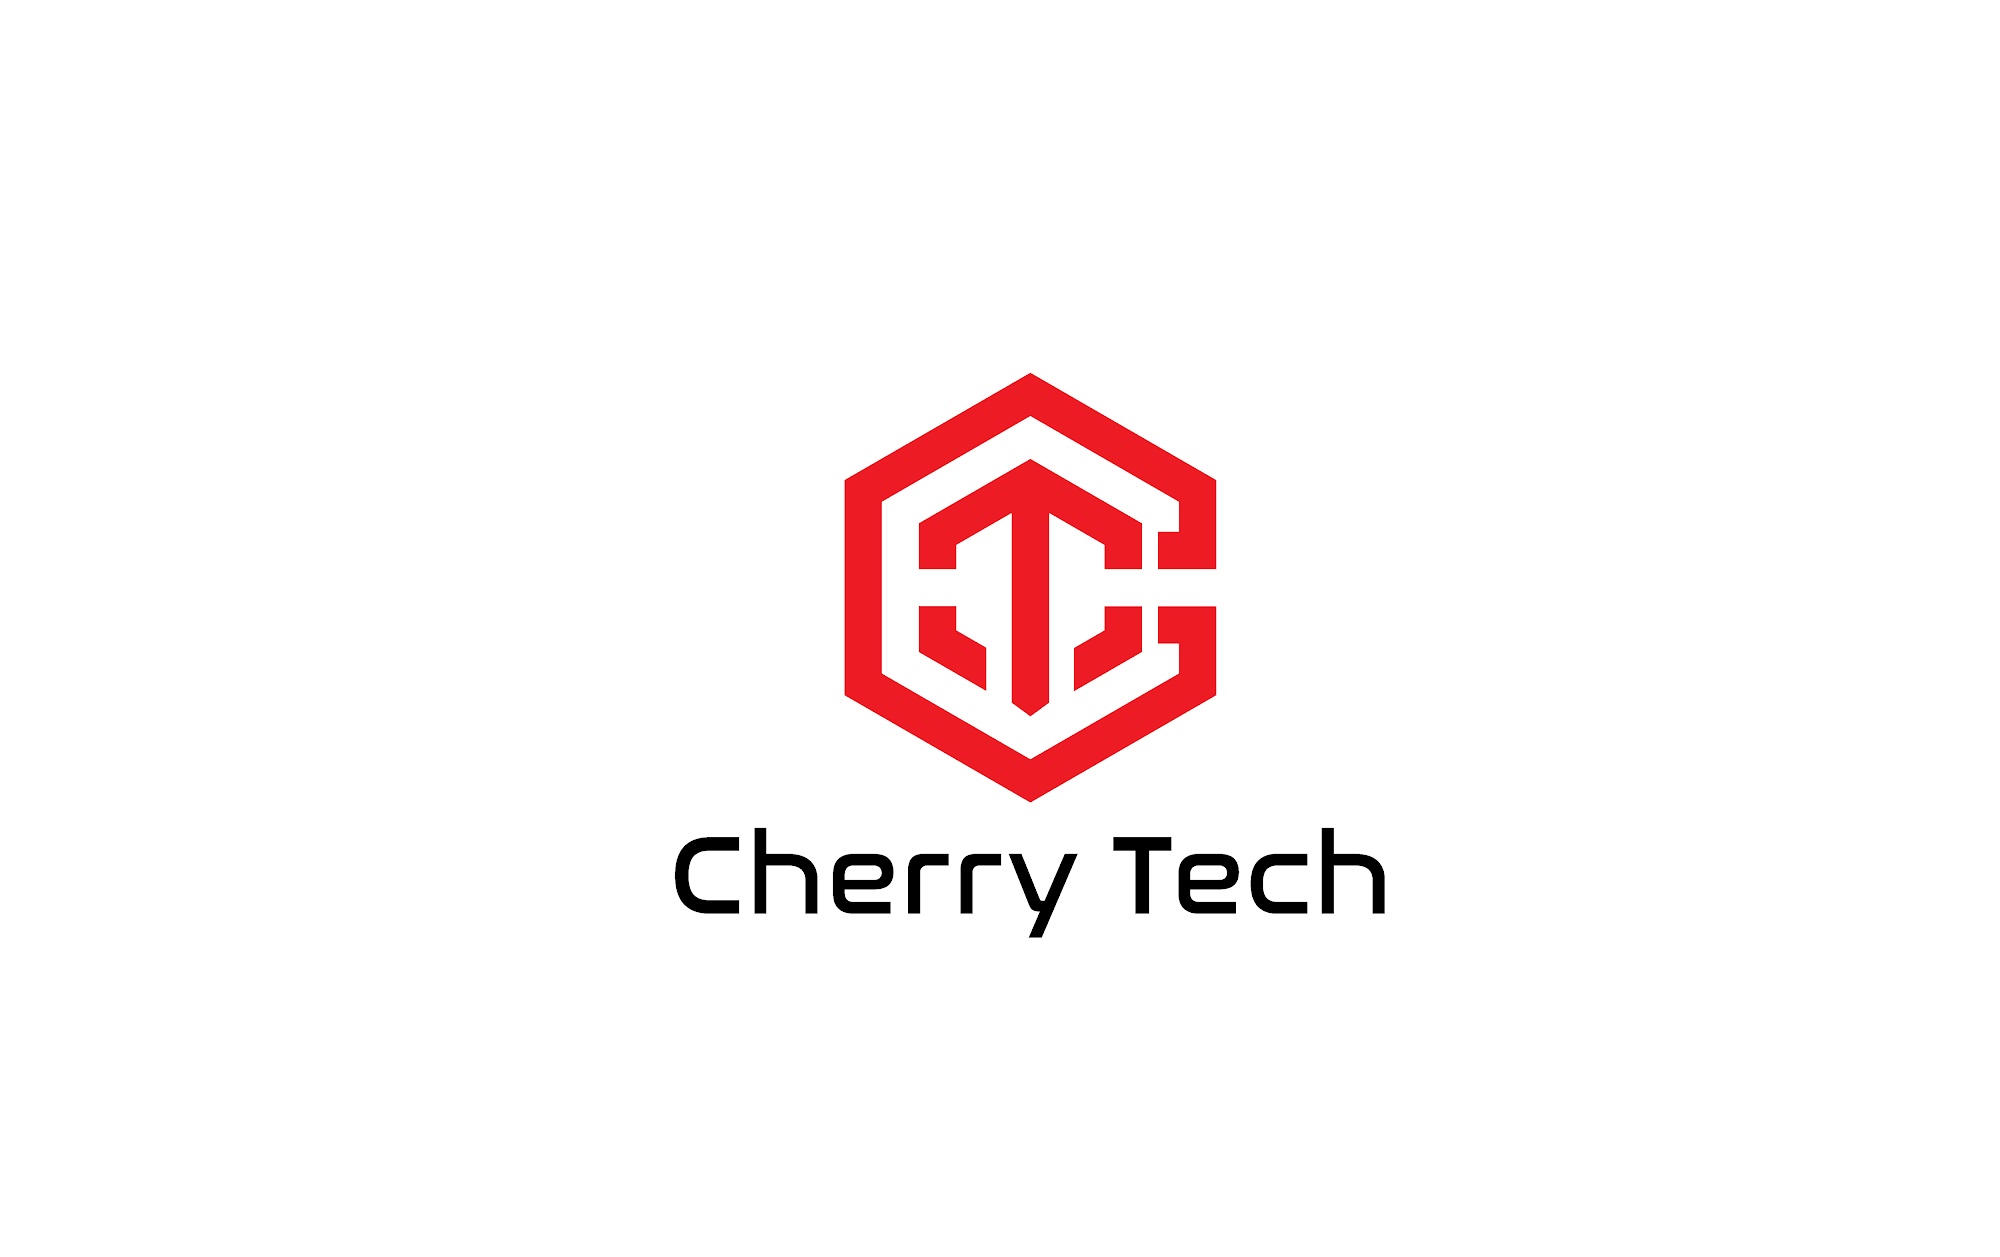 Cherry Tech Wenatchee 636 Valley Mall Pkwy Suite # 7, East Wenatchee Washington 98802